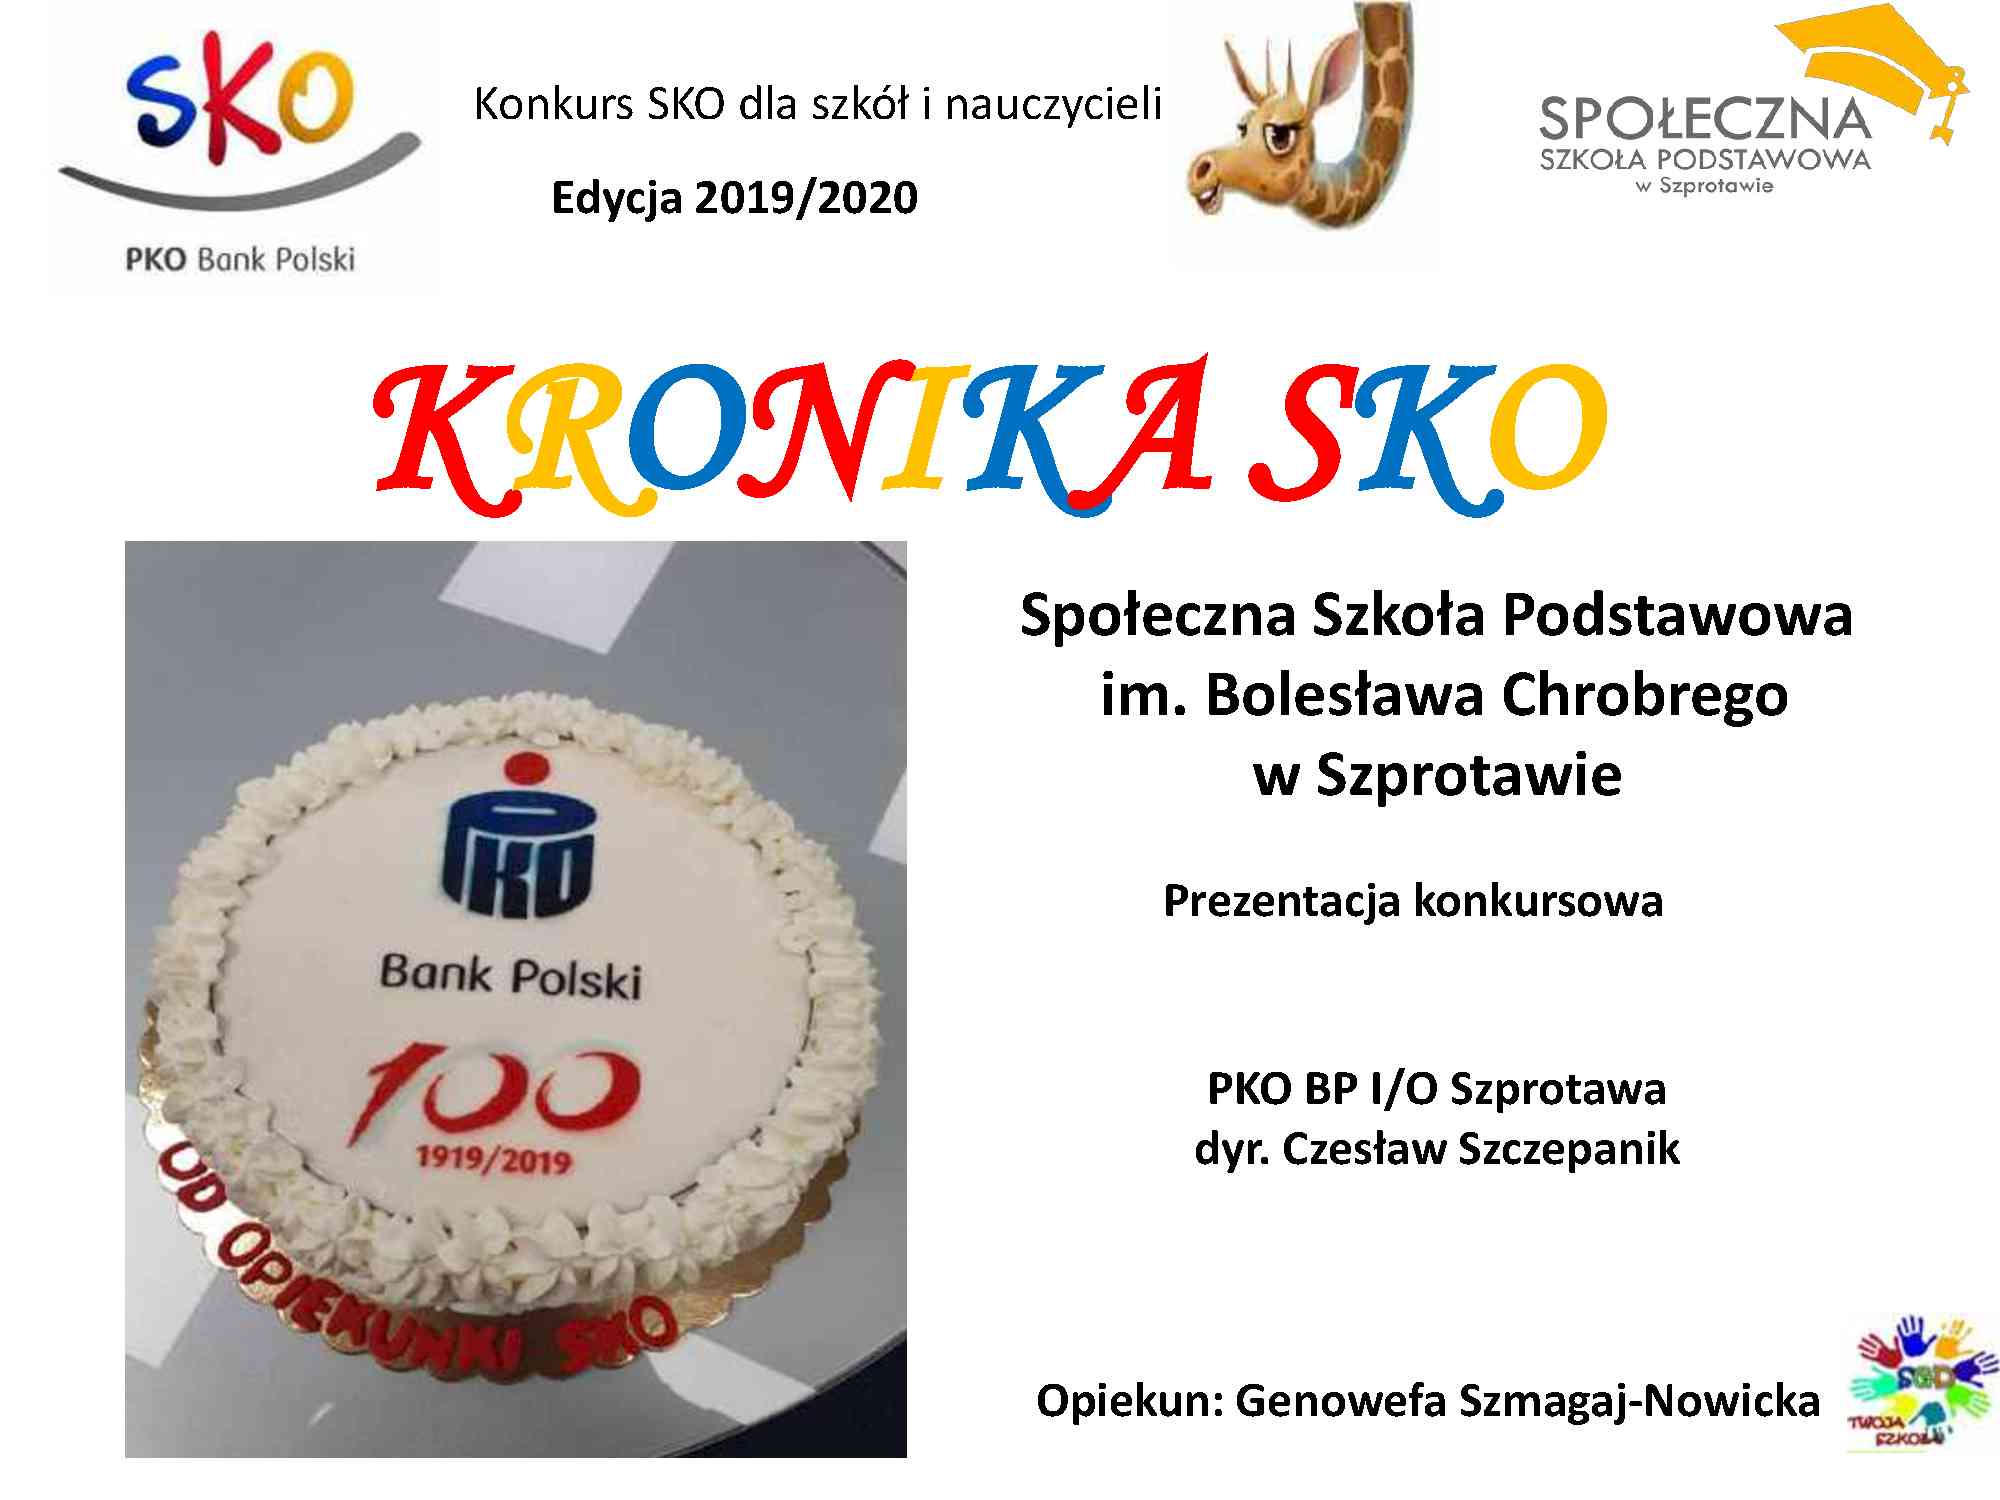 Społecznia Szkoła Podstawowa im. Bolesława Chrobrego w Szprotawie